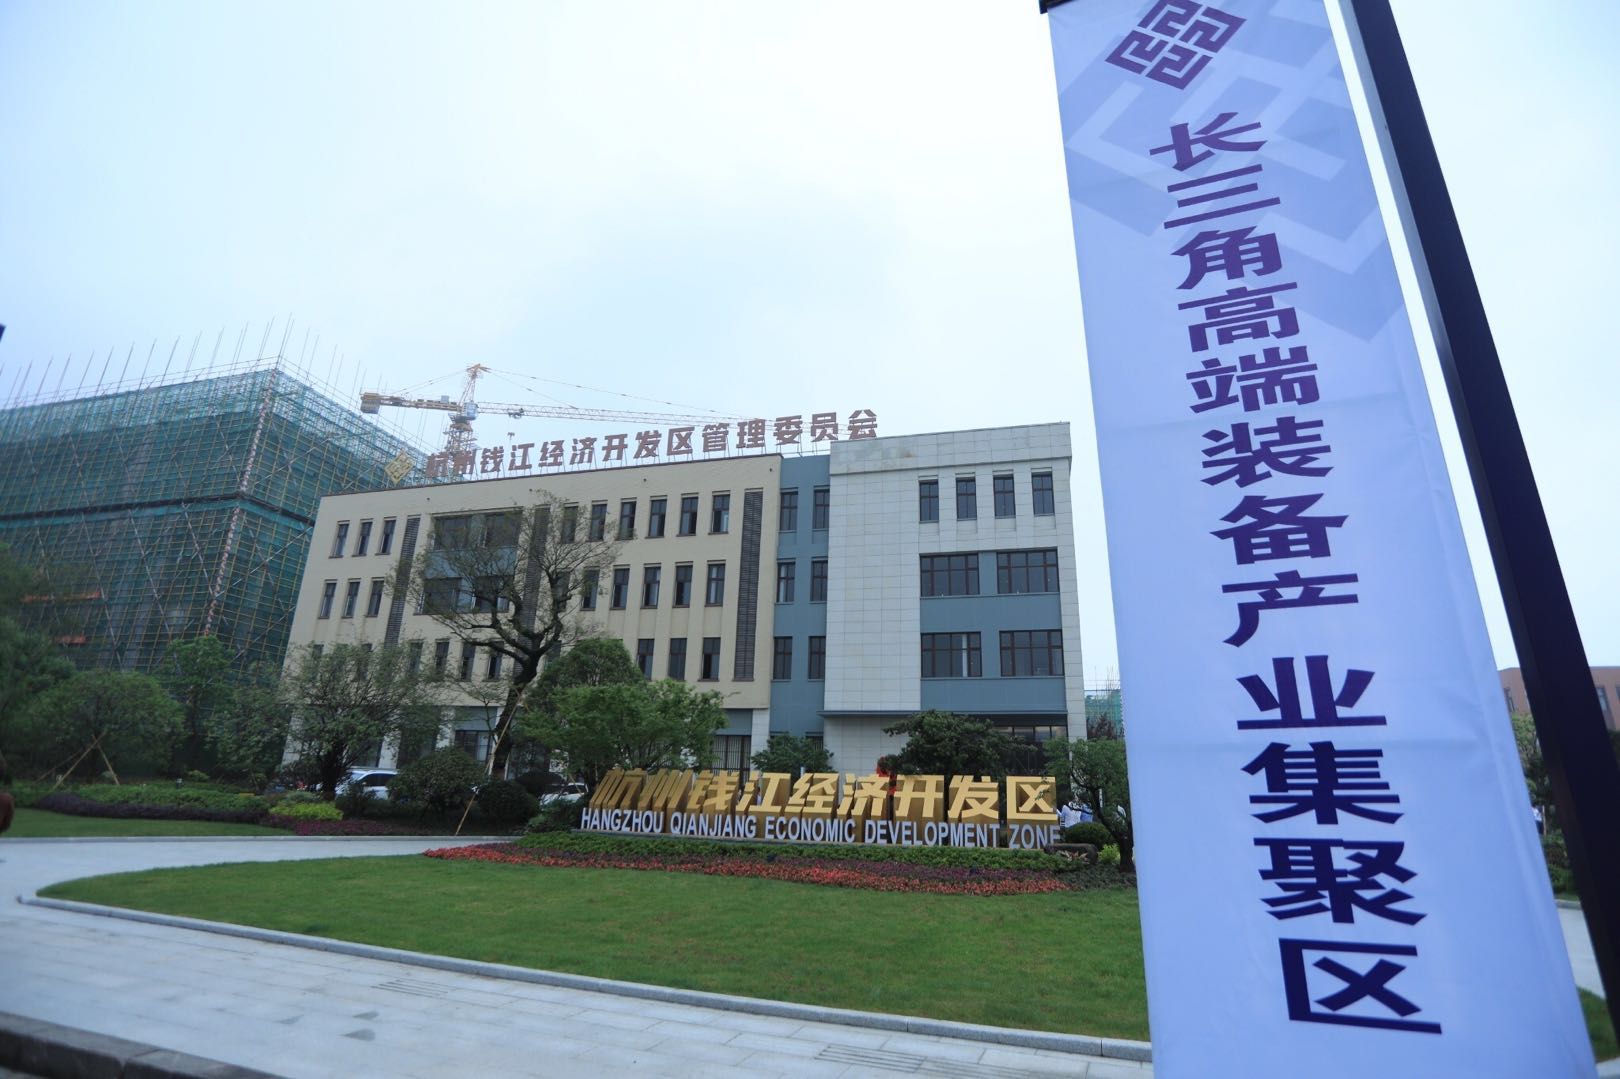 杭州钱江经济开发区位于杭州市余杭区仁和境内,整体规划面积56